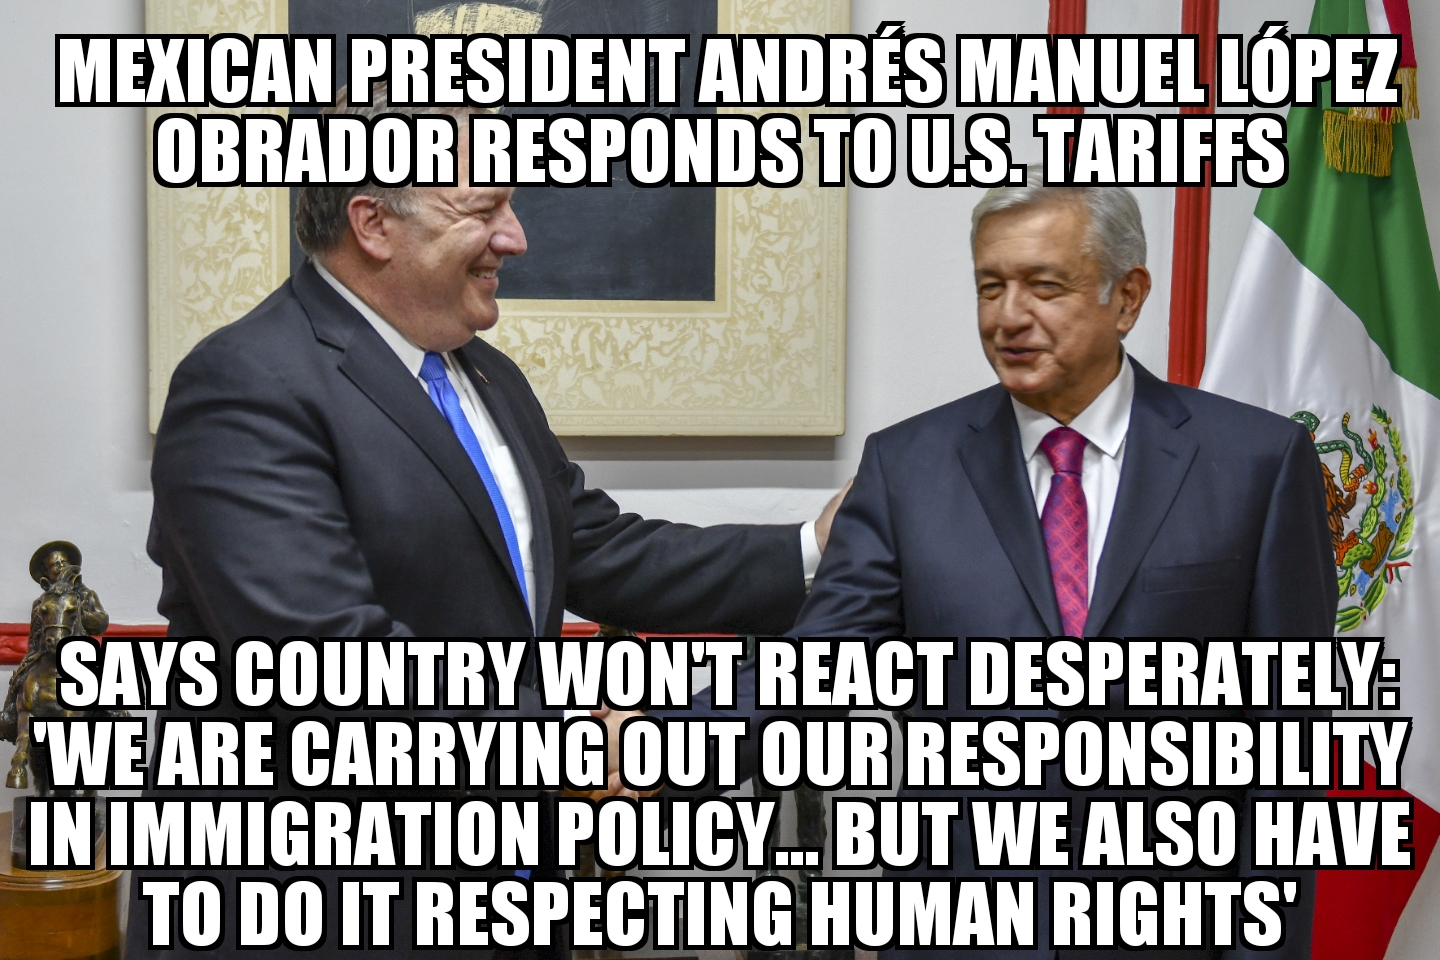 Andrés Manuel López Obrador responds to Trump tariffs